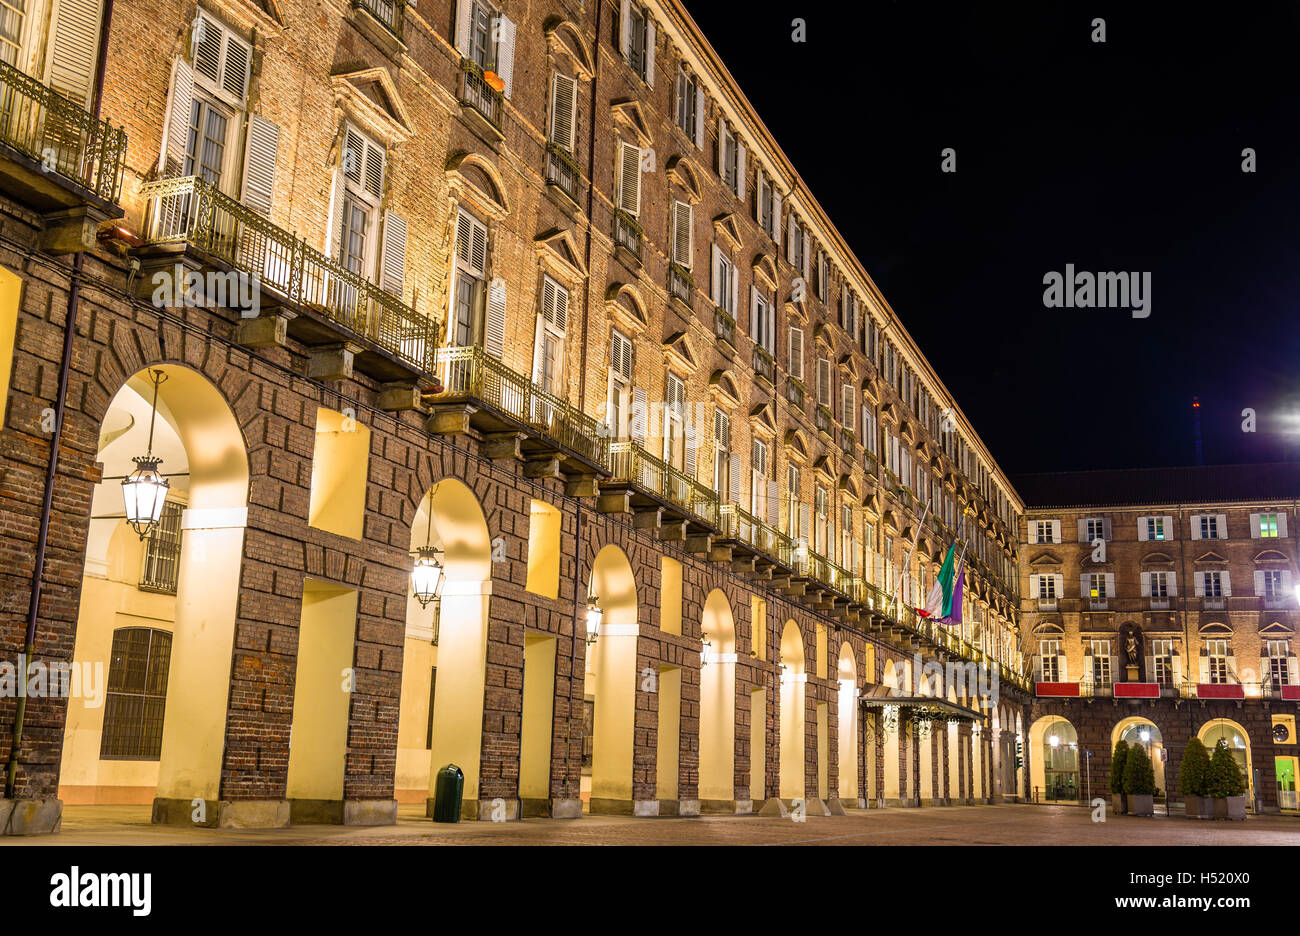 Les bureaux du gouvernement de Turin (Prefettura) - Italie Banque D'Images